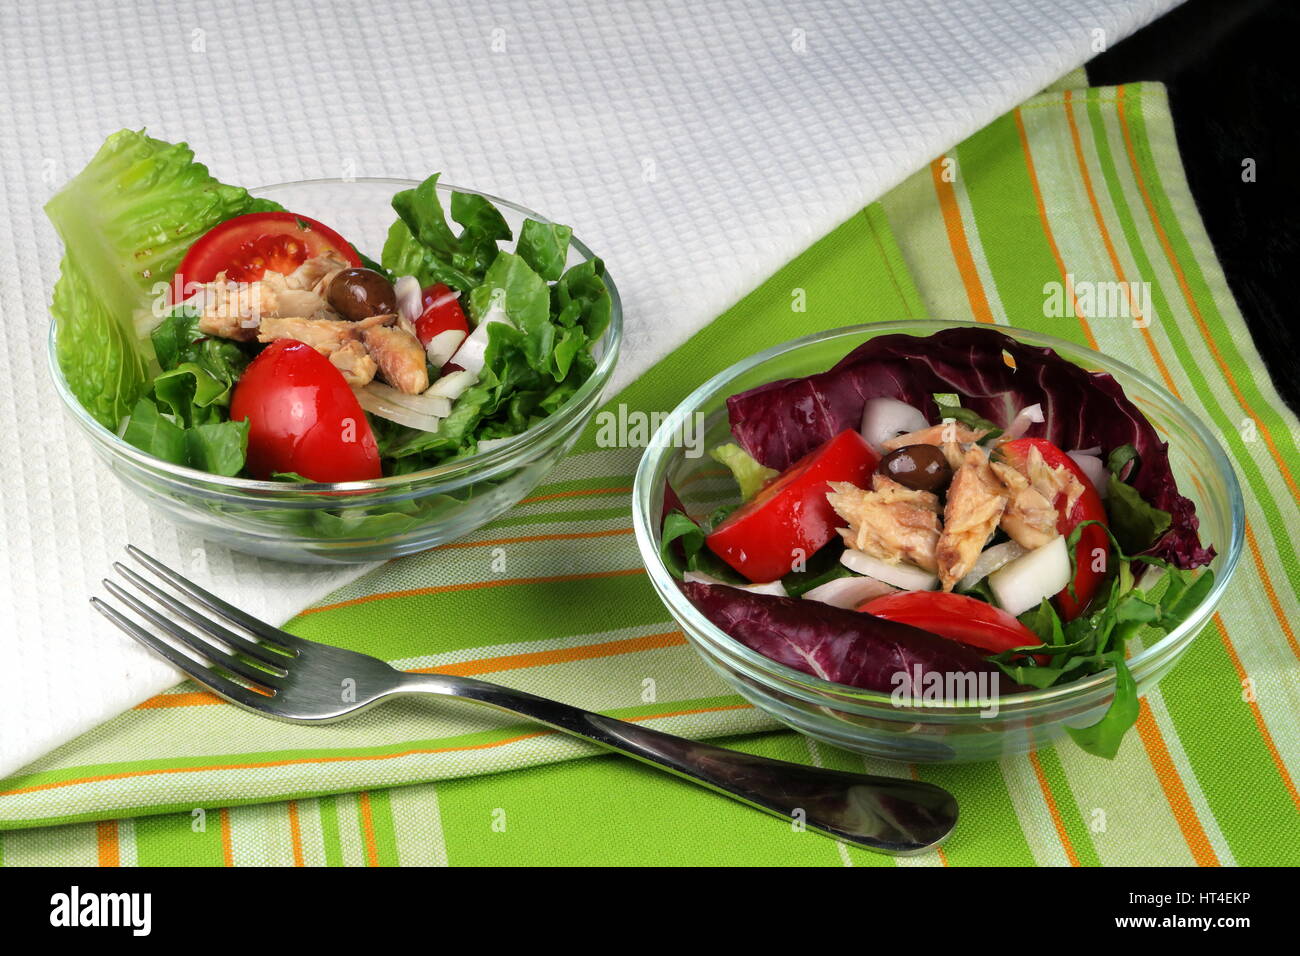 Kopfsalat, Tomaten, Oliven und Makrele Sommersalat serviert in Glasschalen auf bunten Küchentuch mit Gabel - gesunde Nahrung für grüne Wohnzimmer Stockfoto